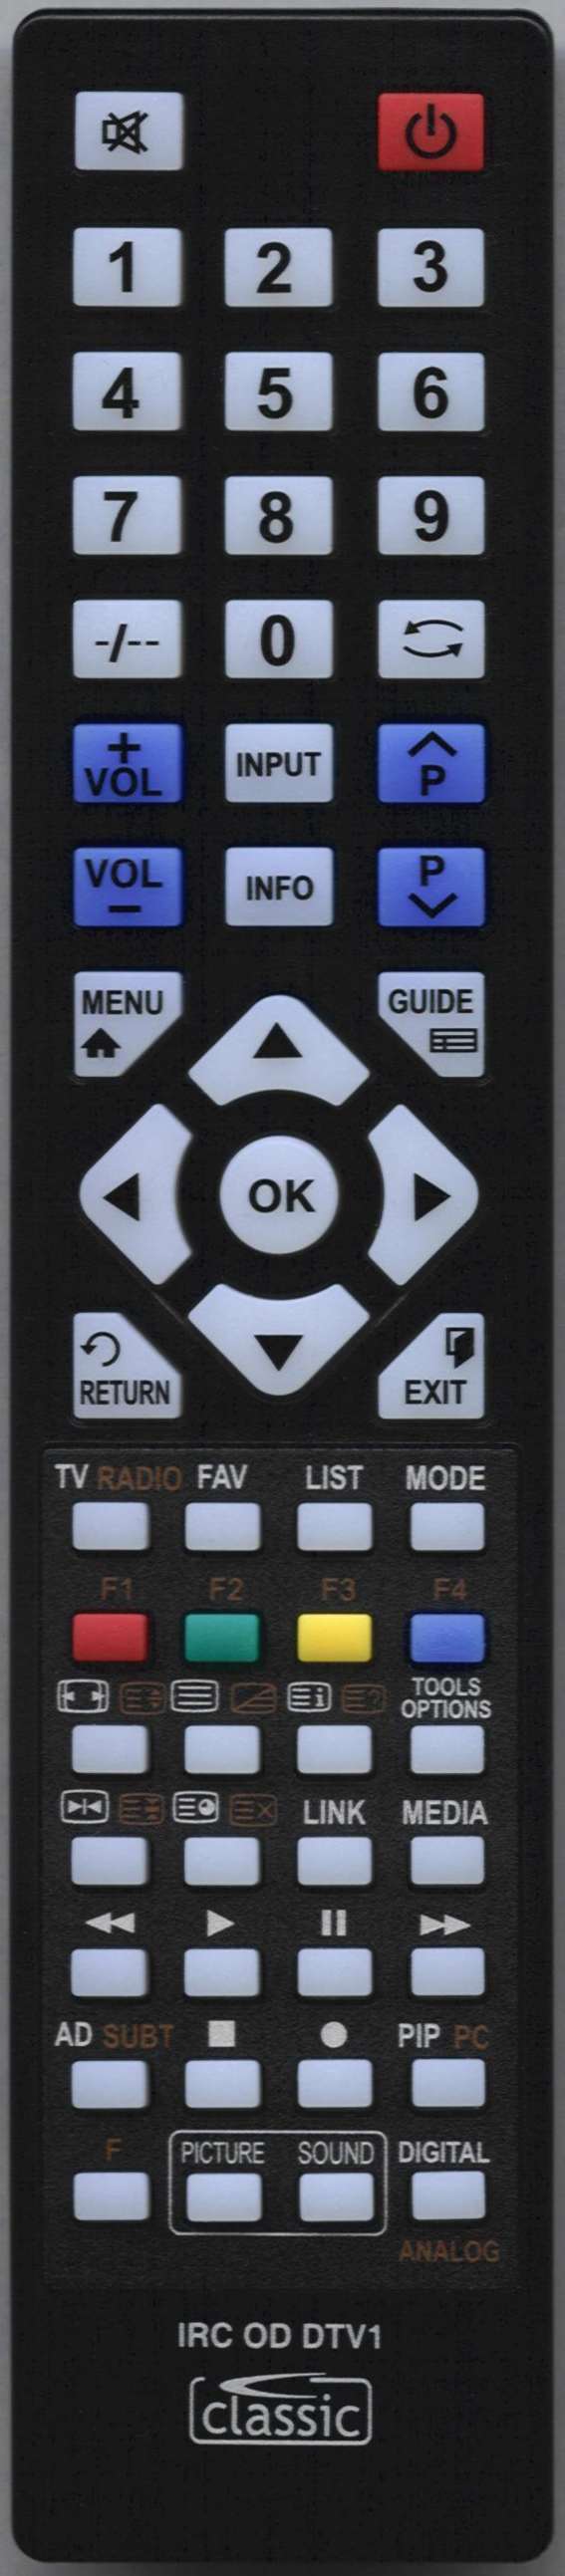 ORION TV39LB139S Remote Control